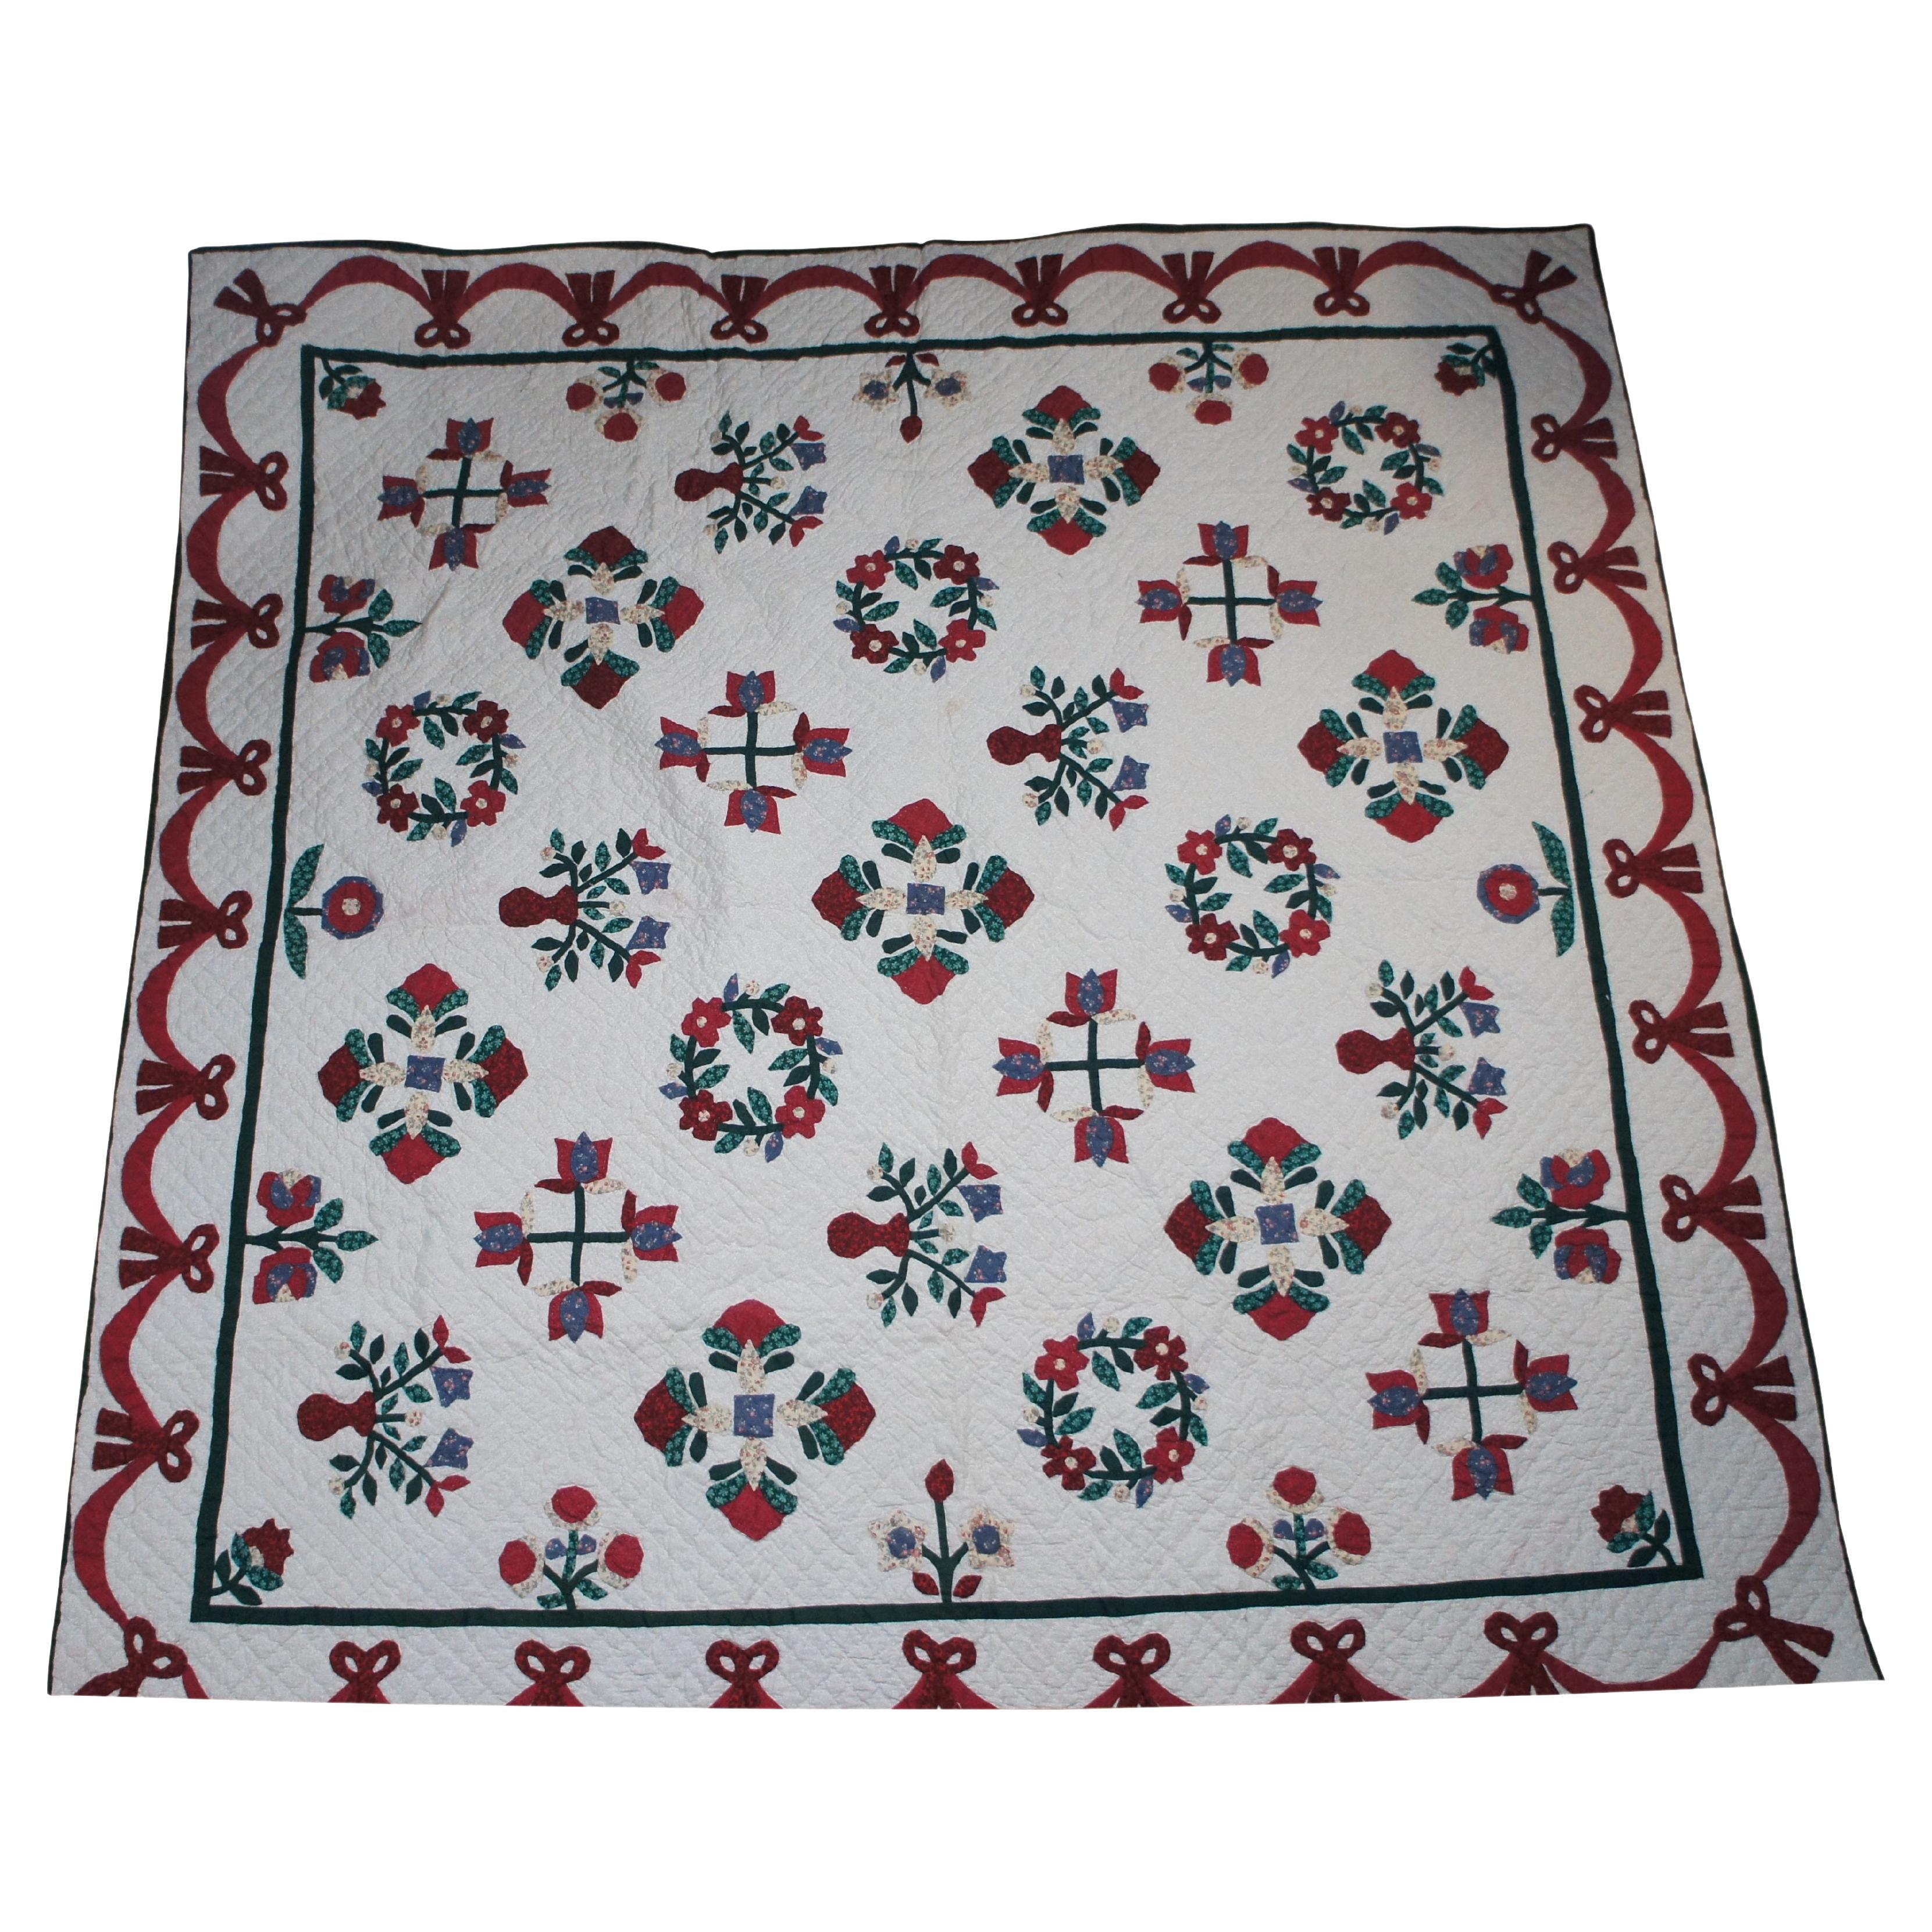 Vintage Hand Sewn Red & Green Floral Quilt Full Size Bedspread Applique Patchwrk en vente